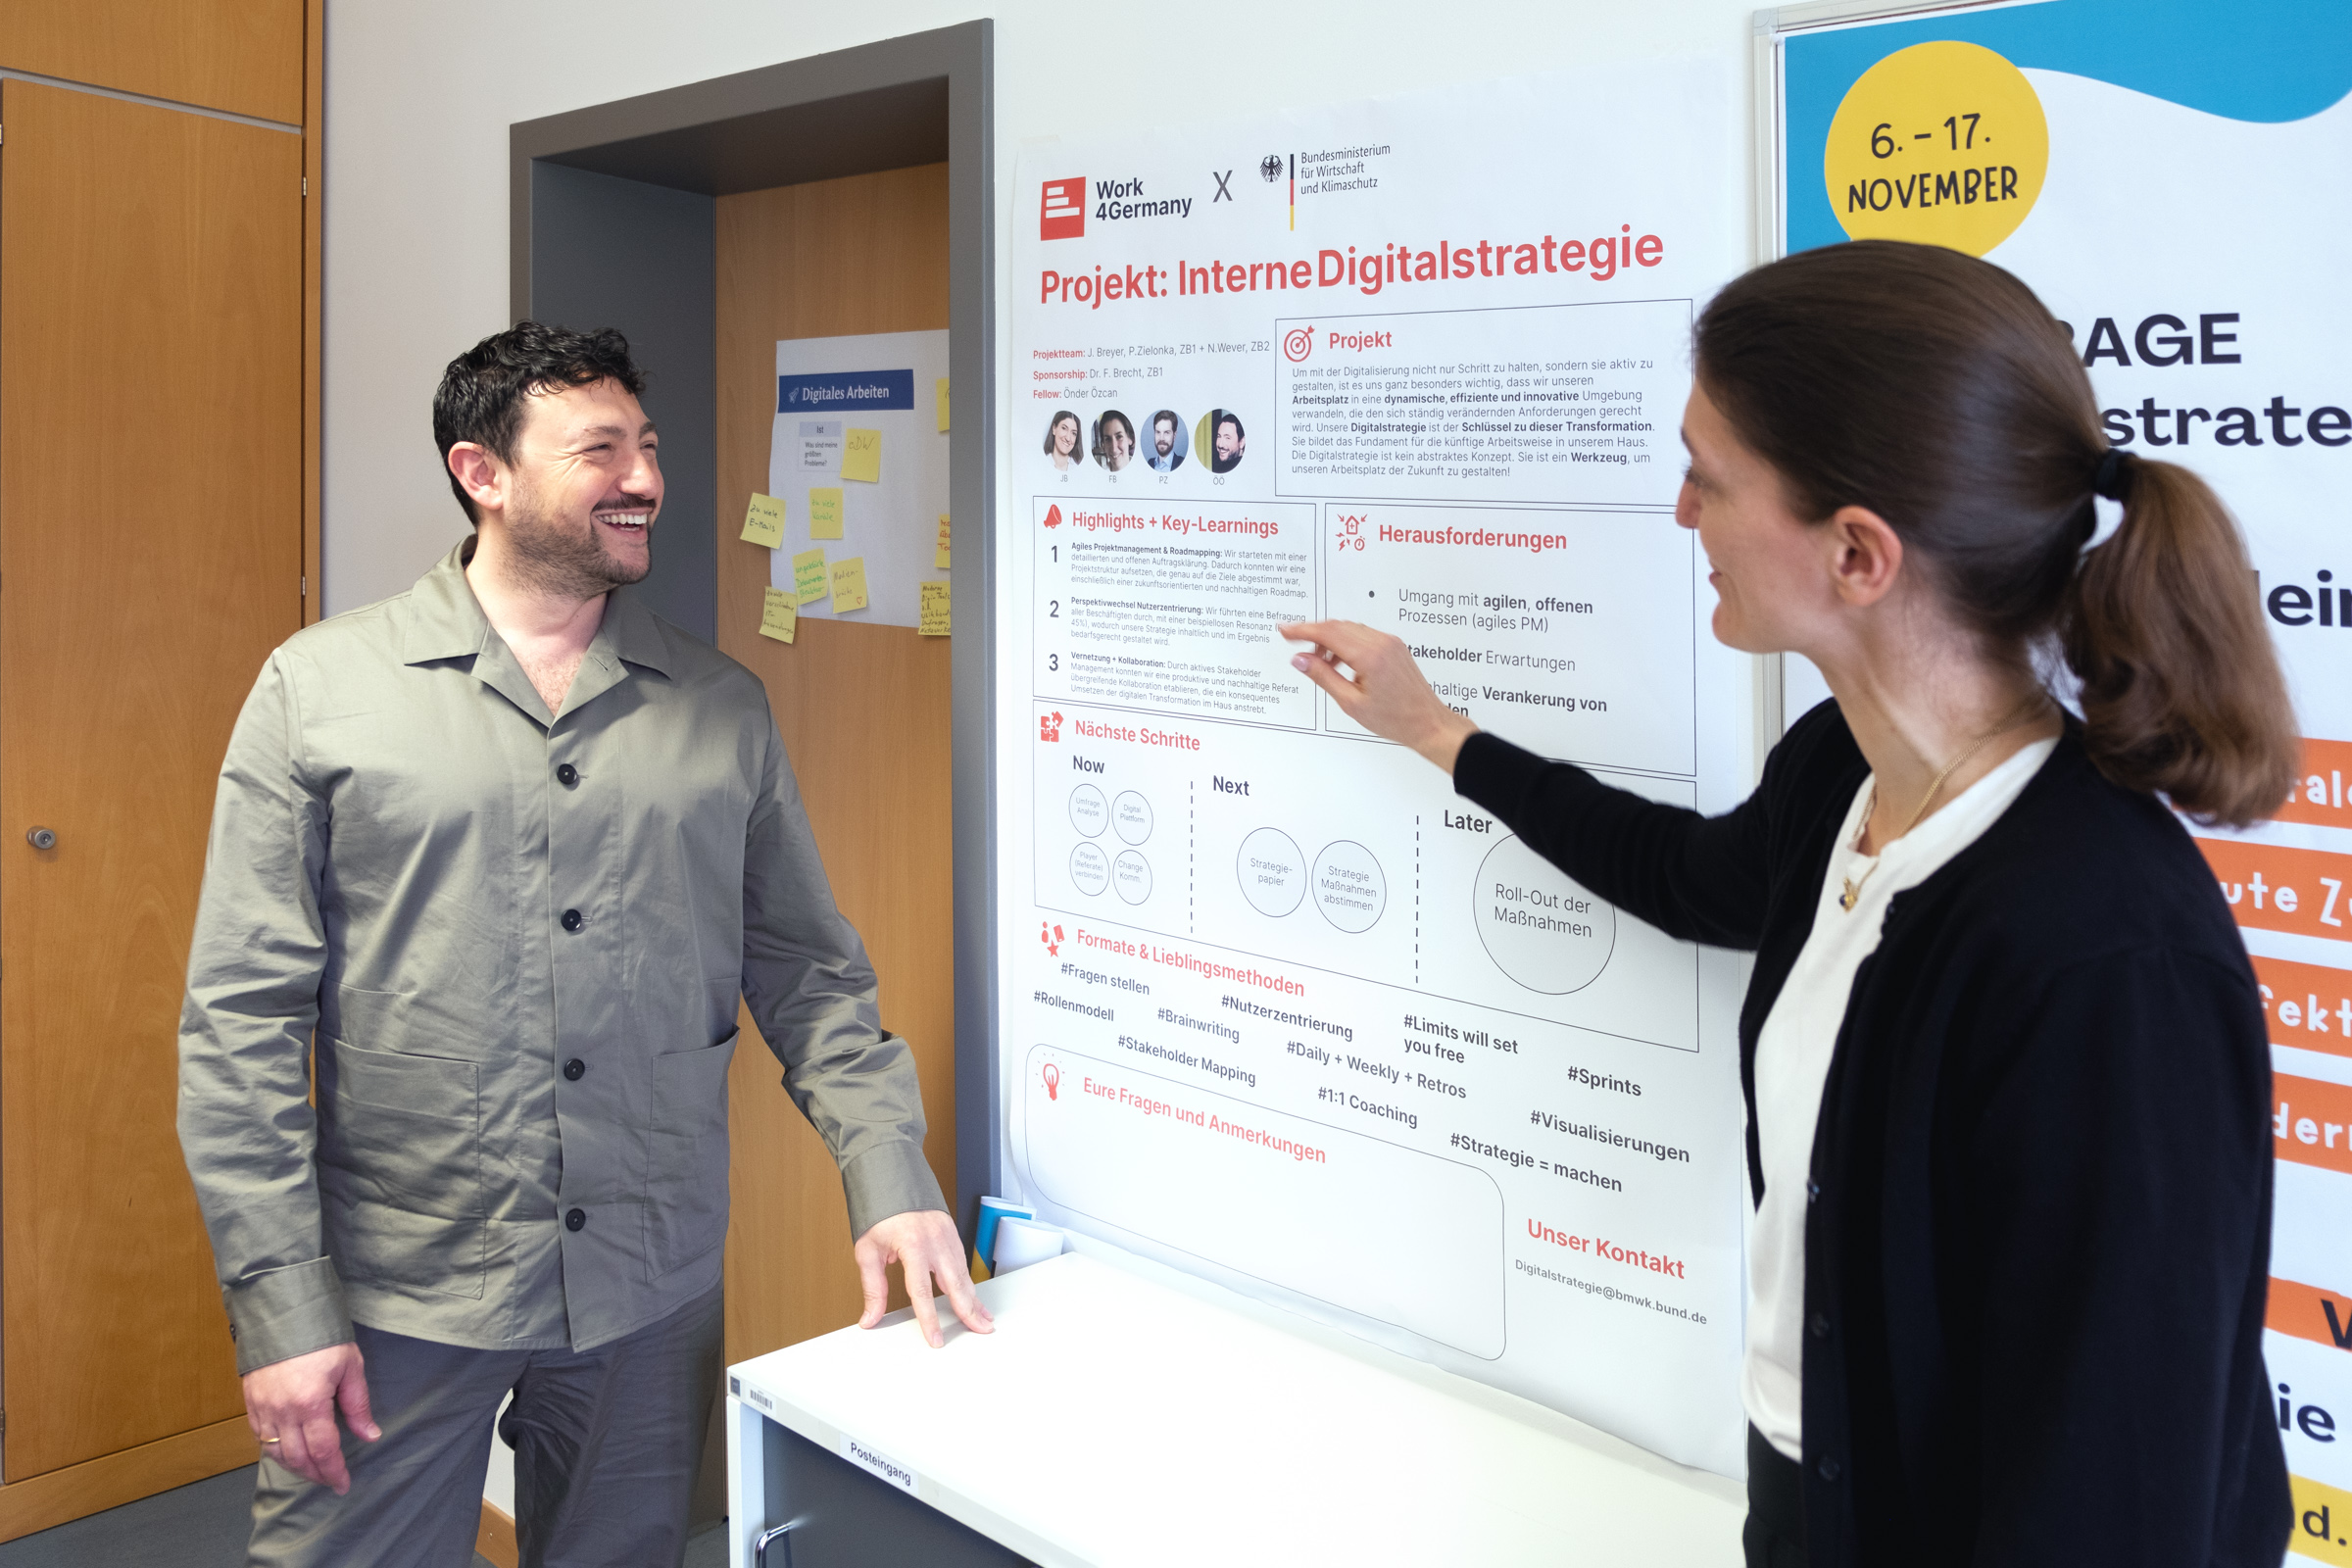 Work4Germany Fellow Önder und seine Projektpartnerin Julia stehen vor einem Plakat mit Informationen zum Projekt „Interne Digitalstrategie“ des Bundesministeriums für Wirtschaft und Klimaschutz